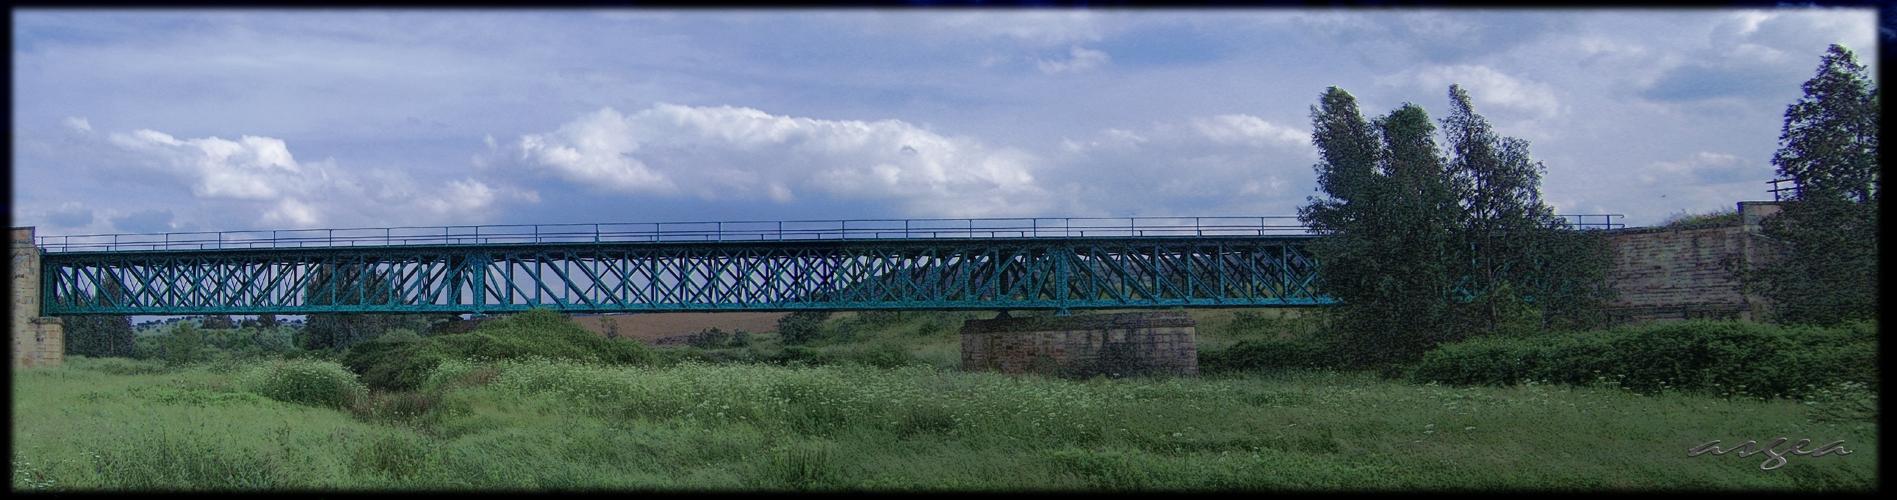 Hoy se cumplen 128 años del descarrilamiento del tren en el Puente de los Soldados. Almadén.